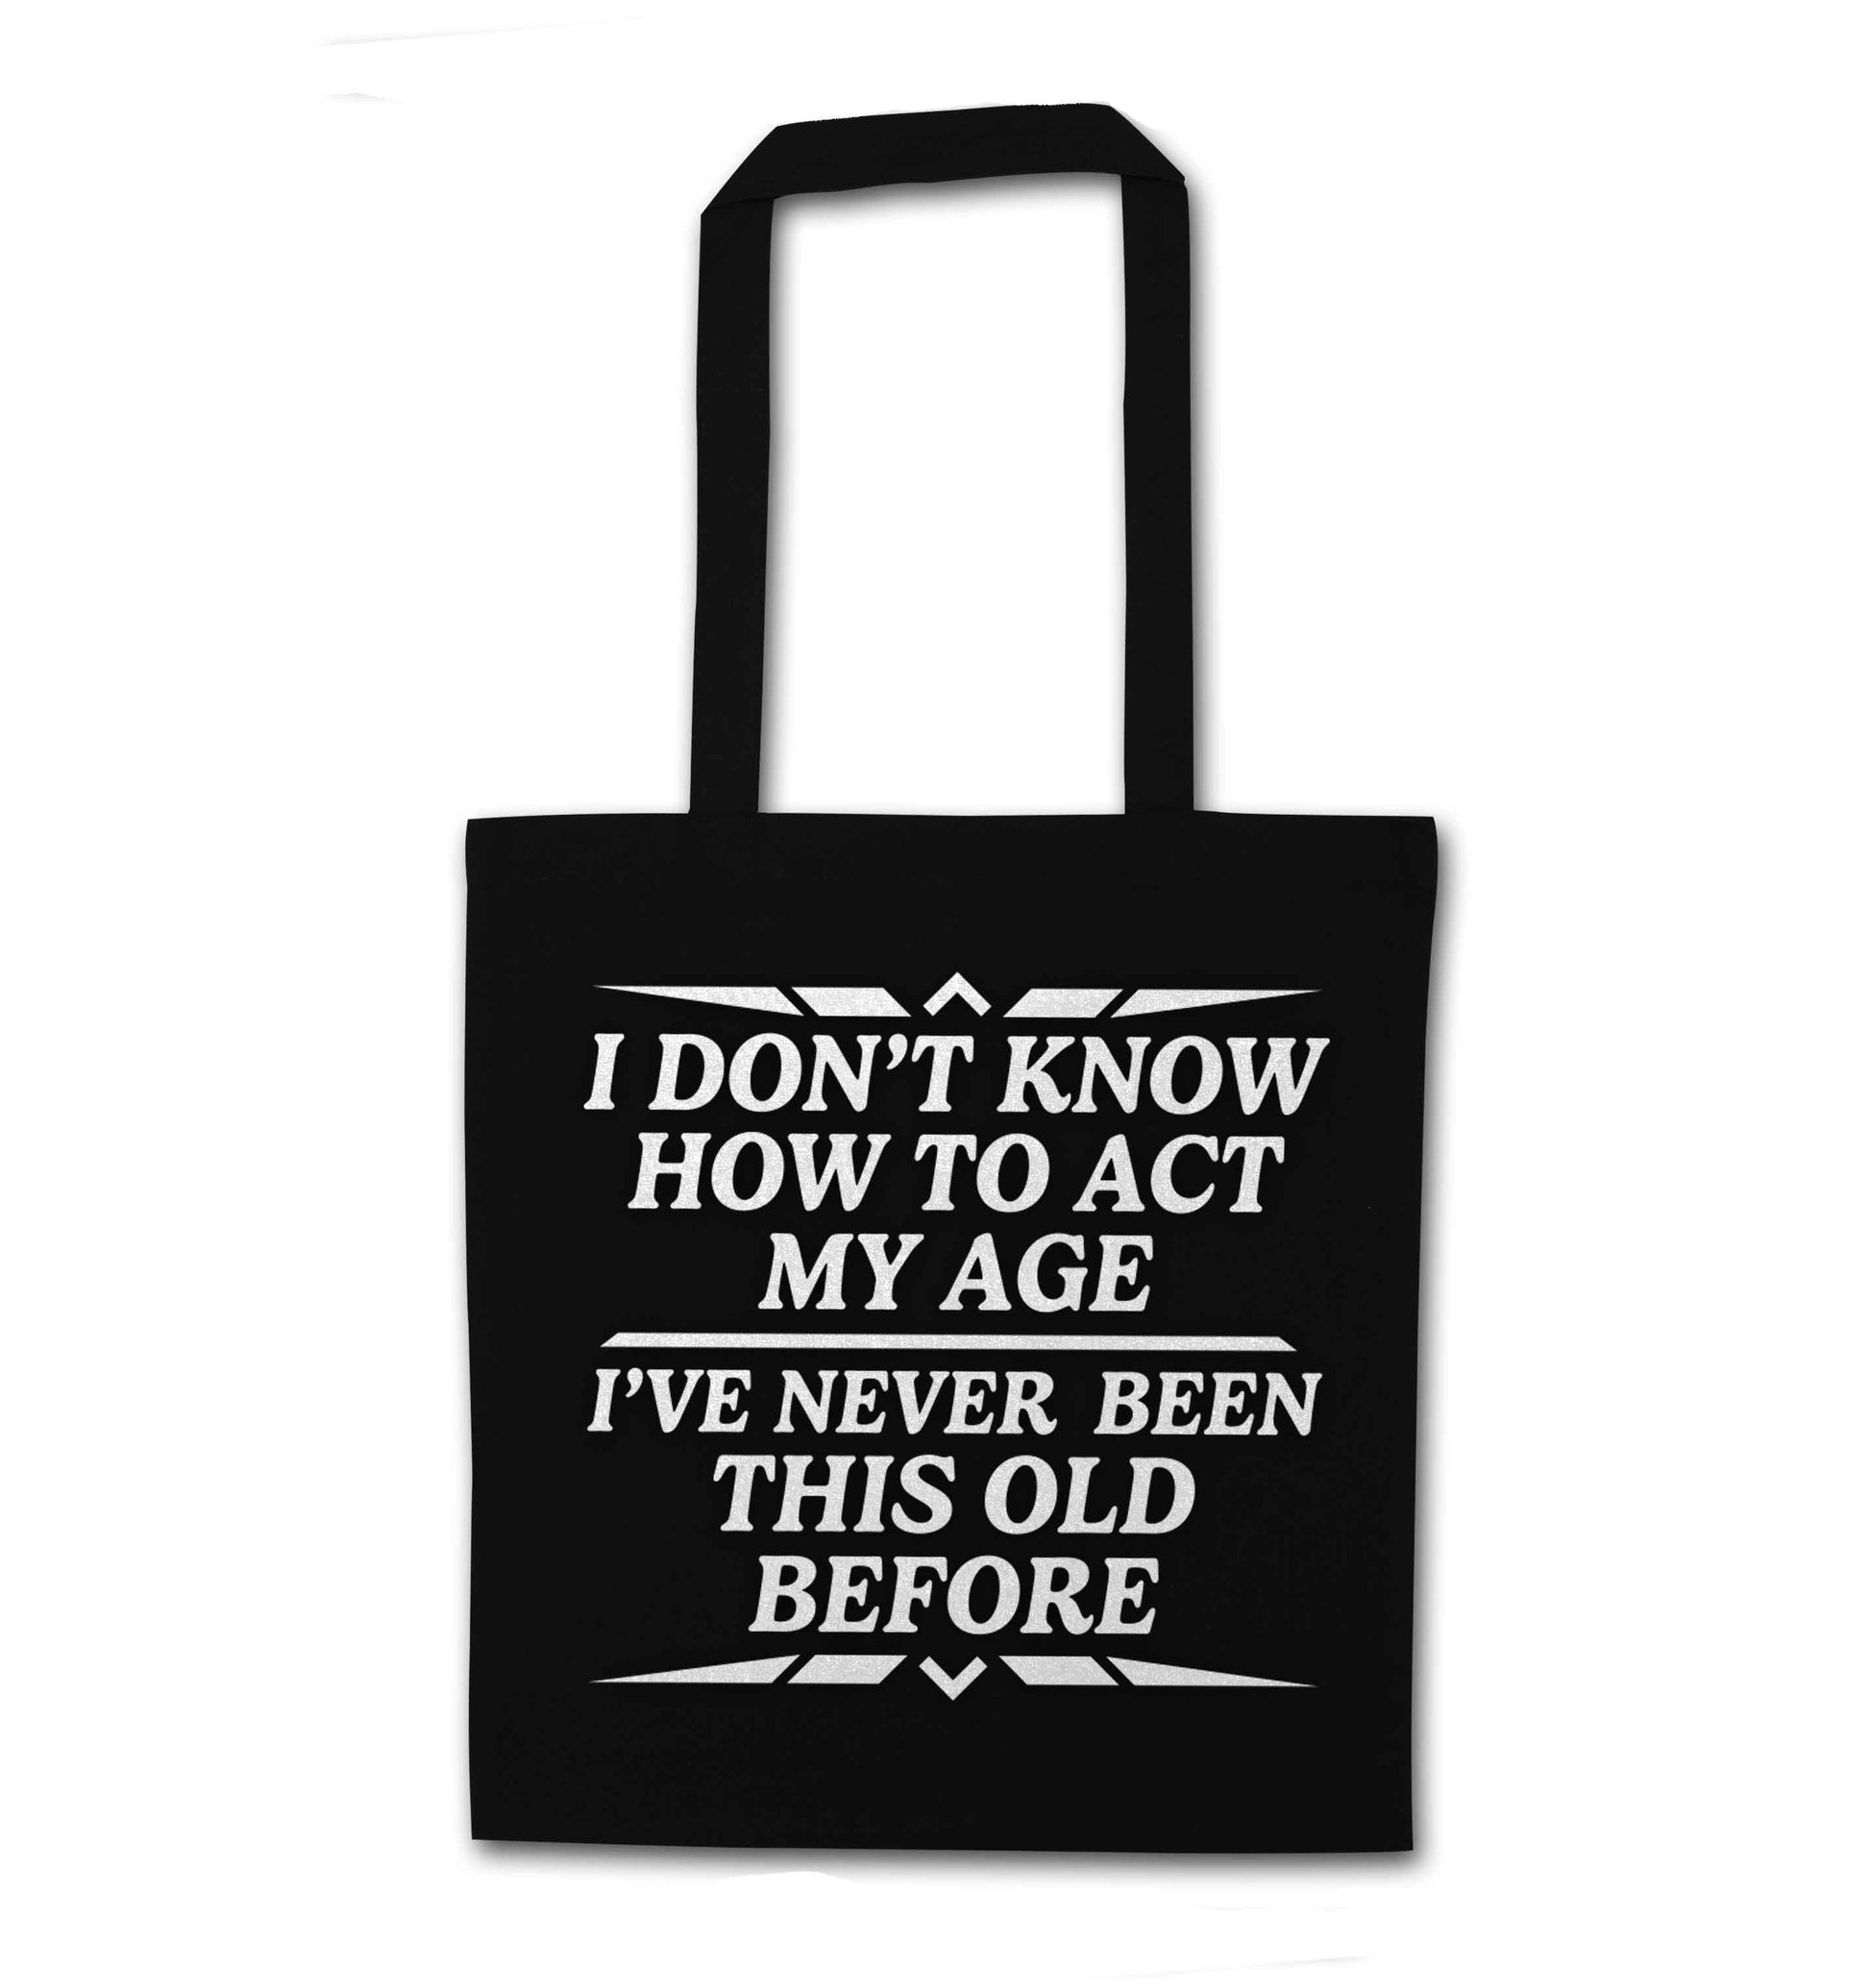 I don't know how to act my age I've never been this old before black tote bag